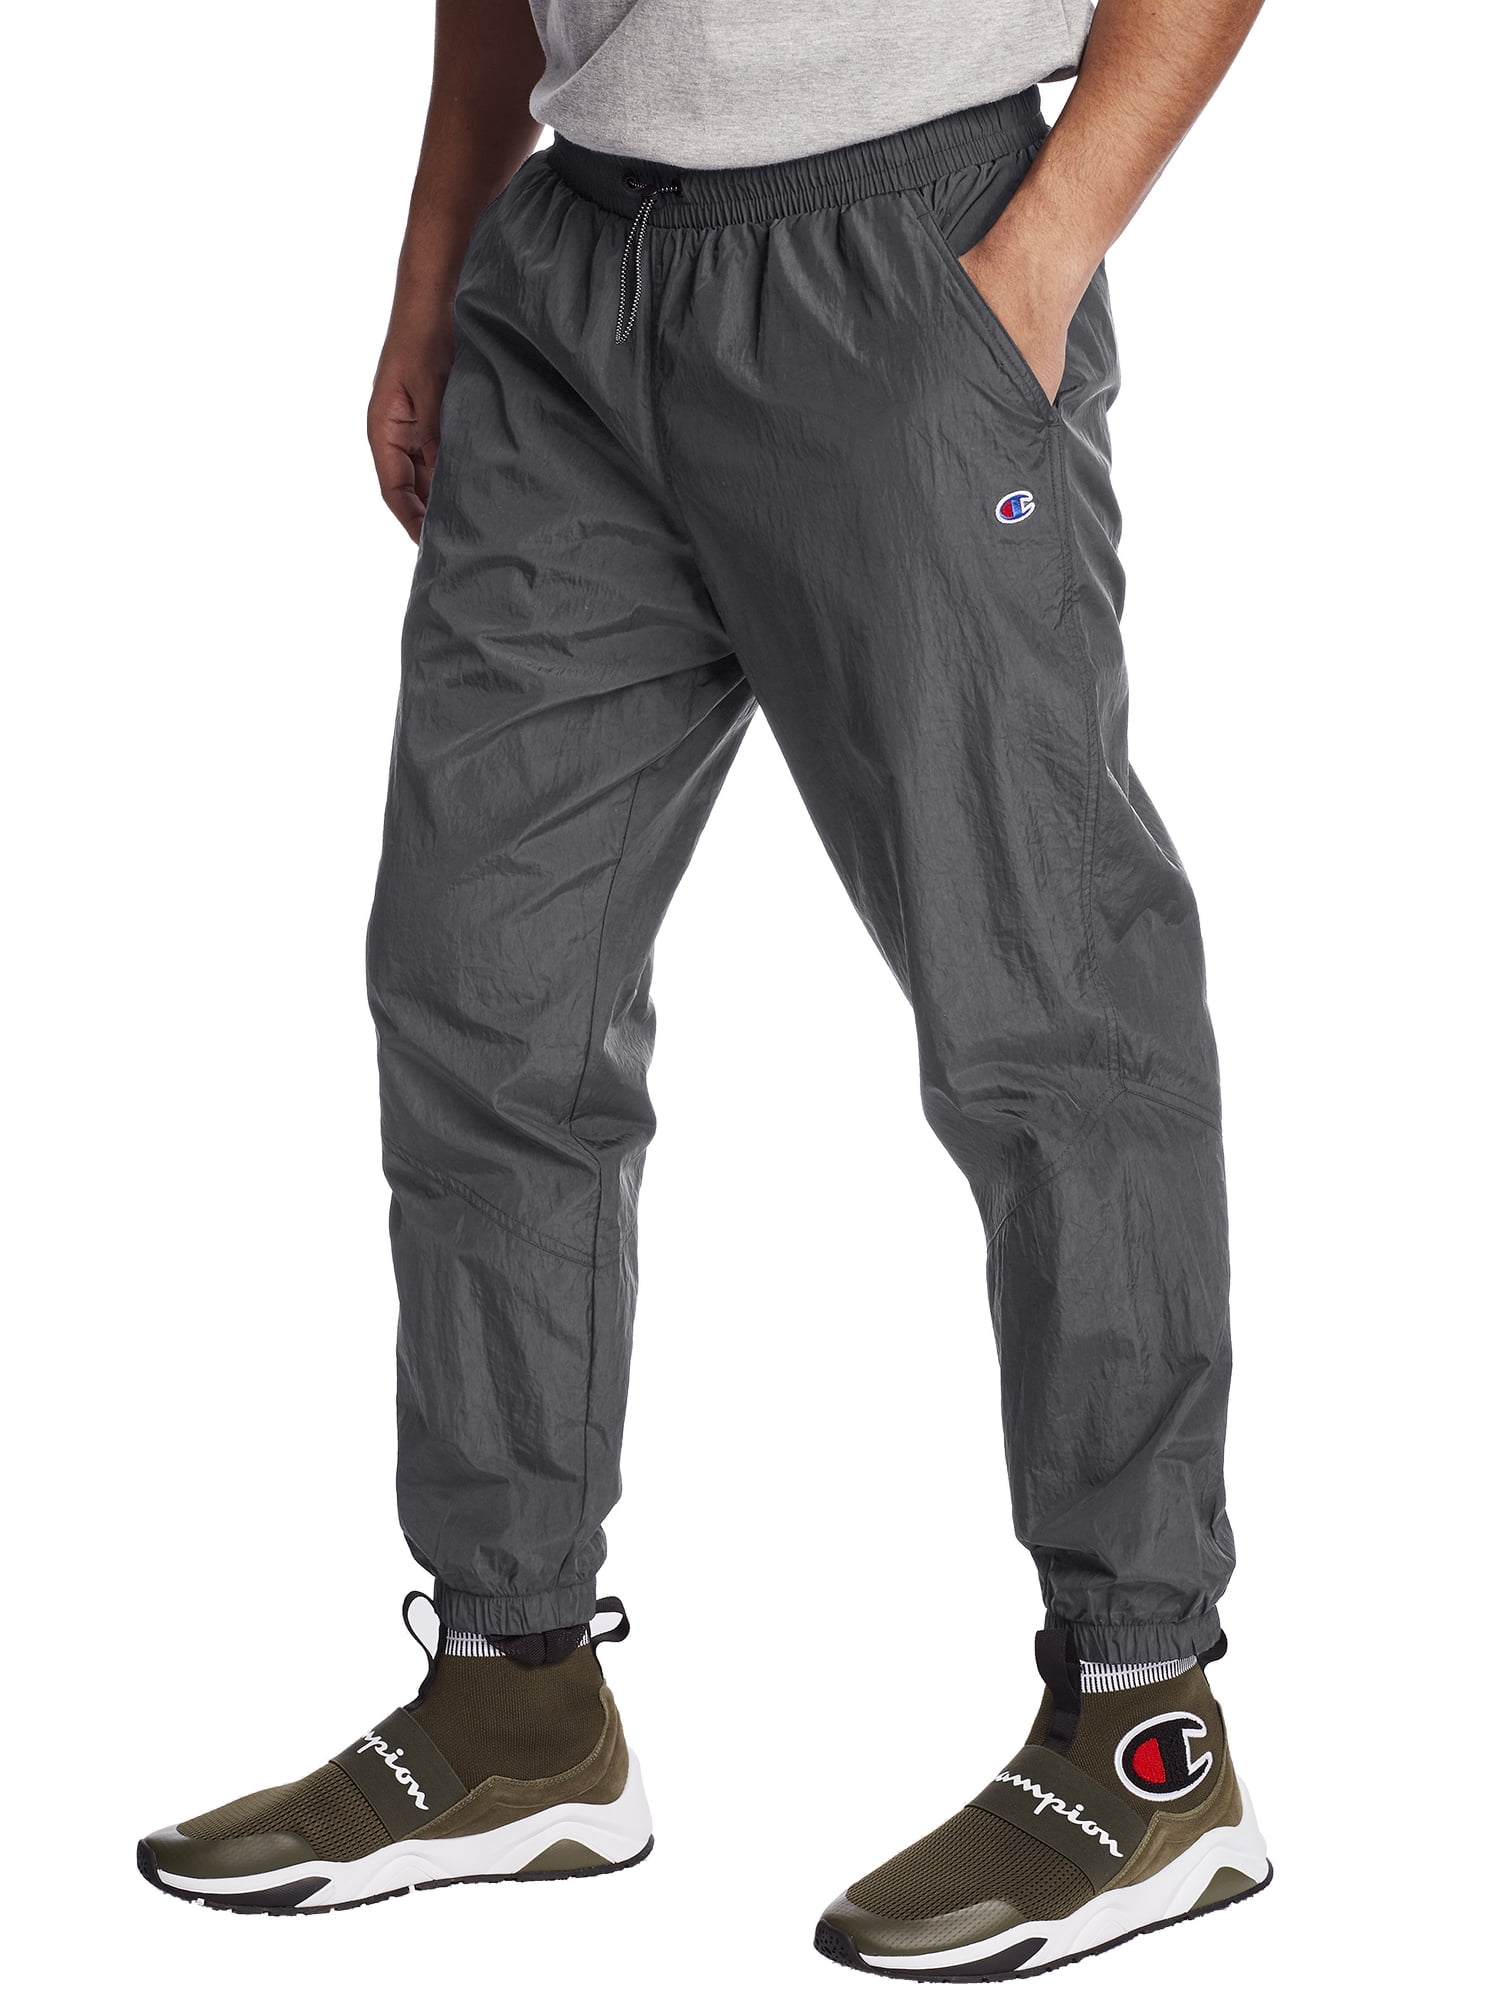 Regnjakke duft Betjene Champion Men's Hybrid Woven Pants - Walmart.com